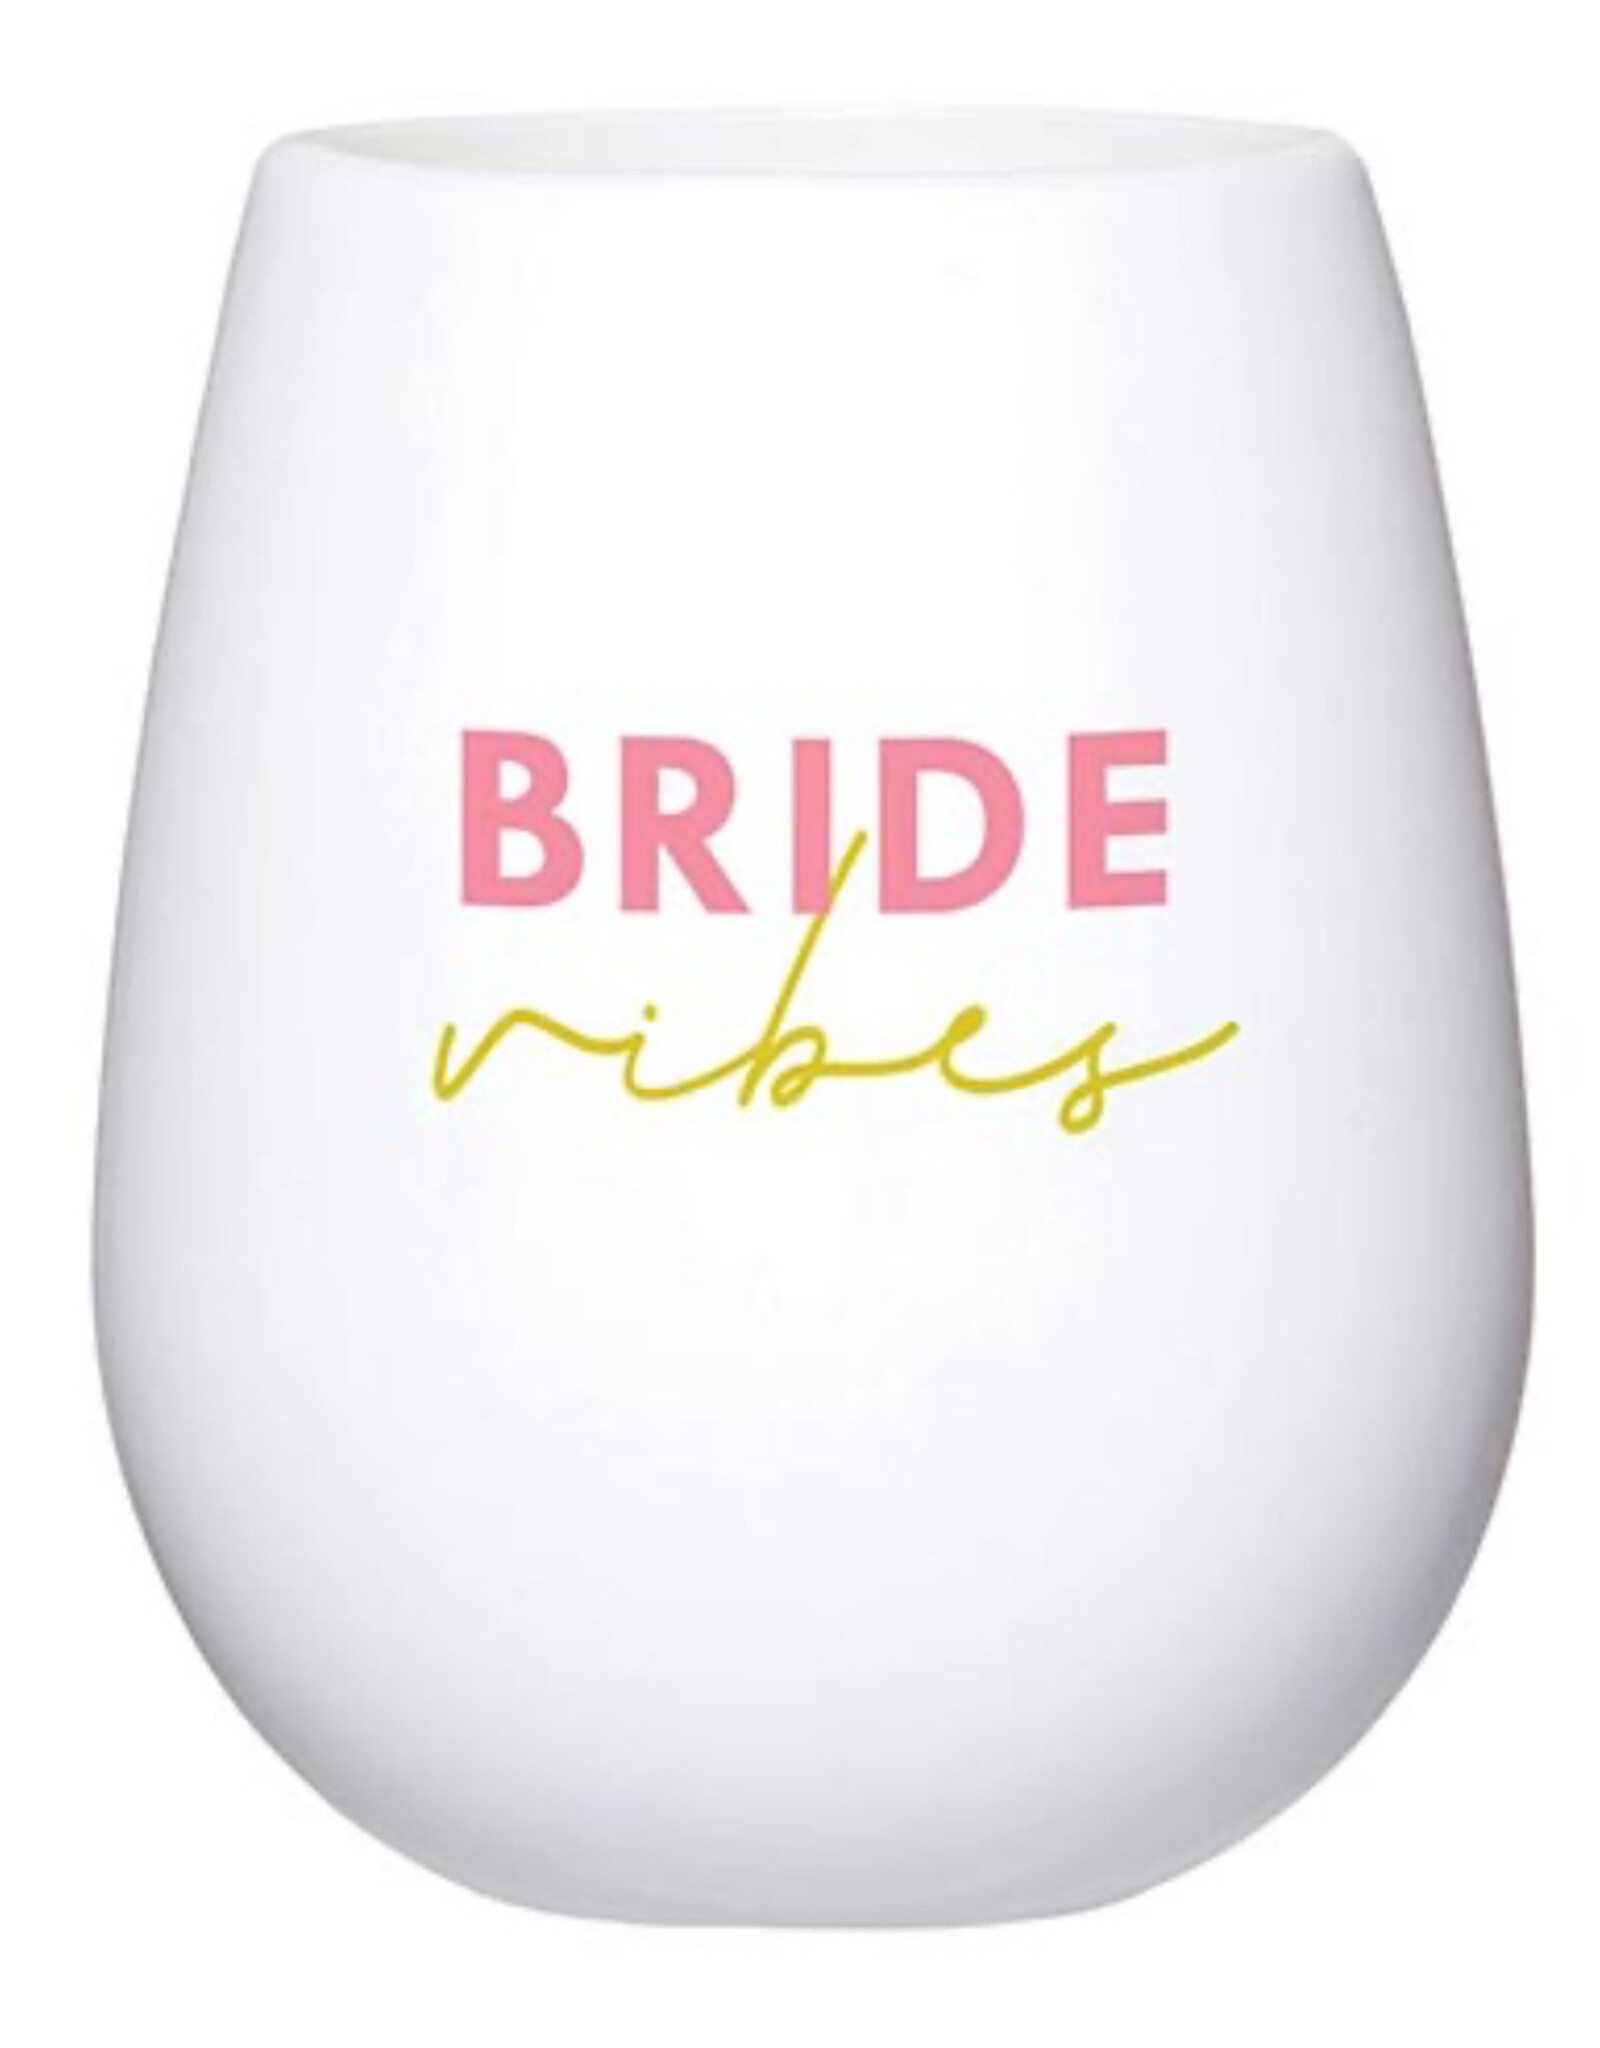 Santa Barbara Design Studio Silicone Wine Glass - Bride Vibes